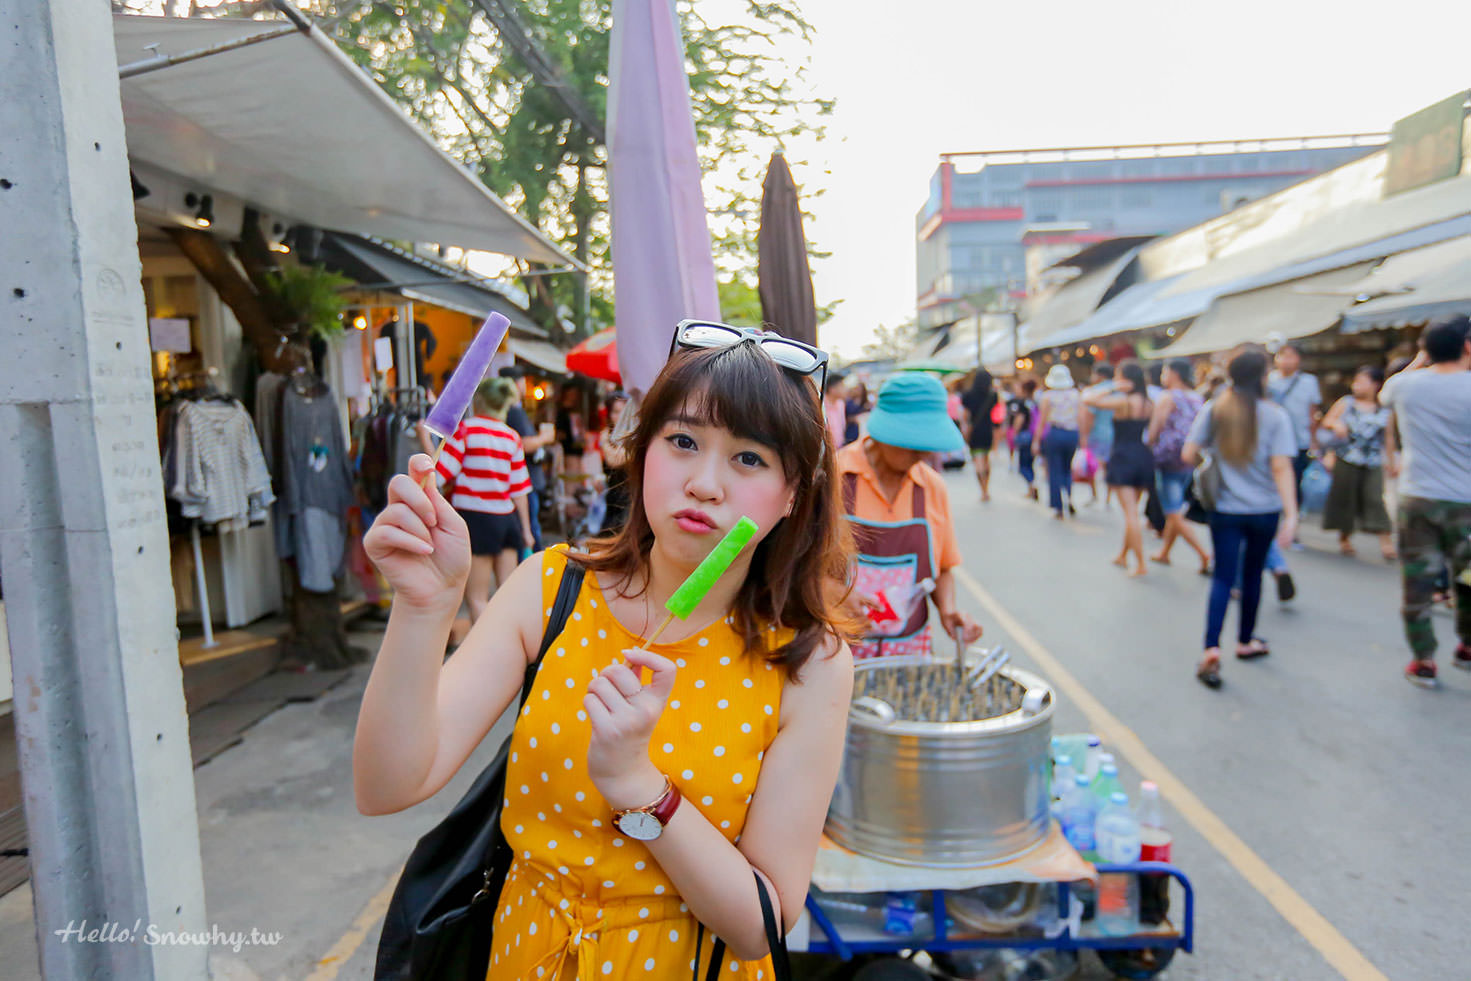 泰國曼谷自由行,曼谷懶人包,曼谷行程,曼谷必吃,泰國曼谷推薦必訪景點,曼谷美食,曼谷購物,曼谷交通,曼谷機票,曼谷行程懶人包